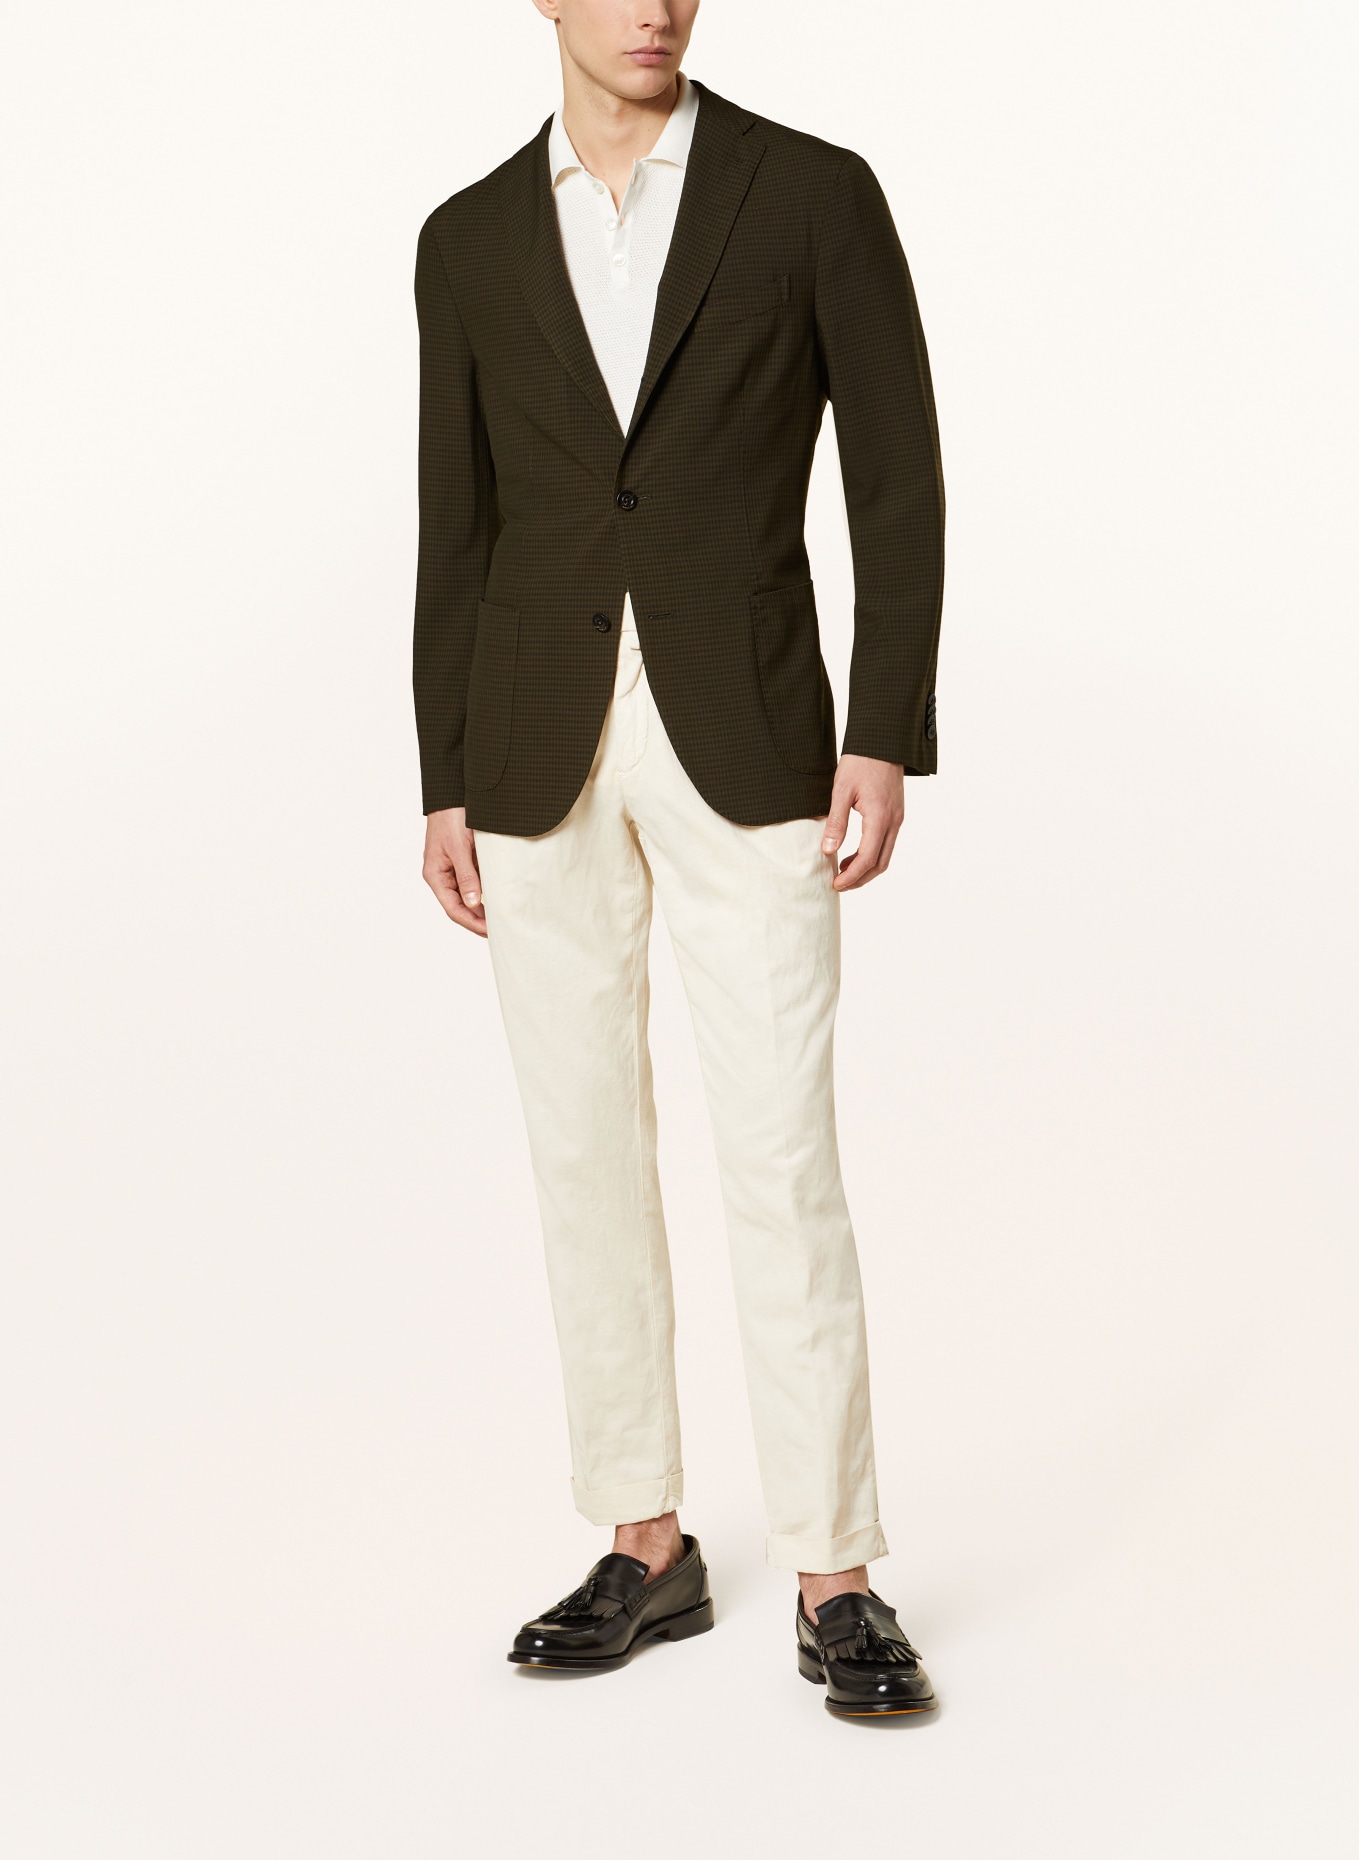 BOGLIOLI Tailored jacket slim fit, Color: OLIVE/ BLACK (Image 2)